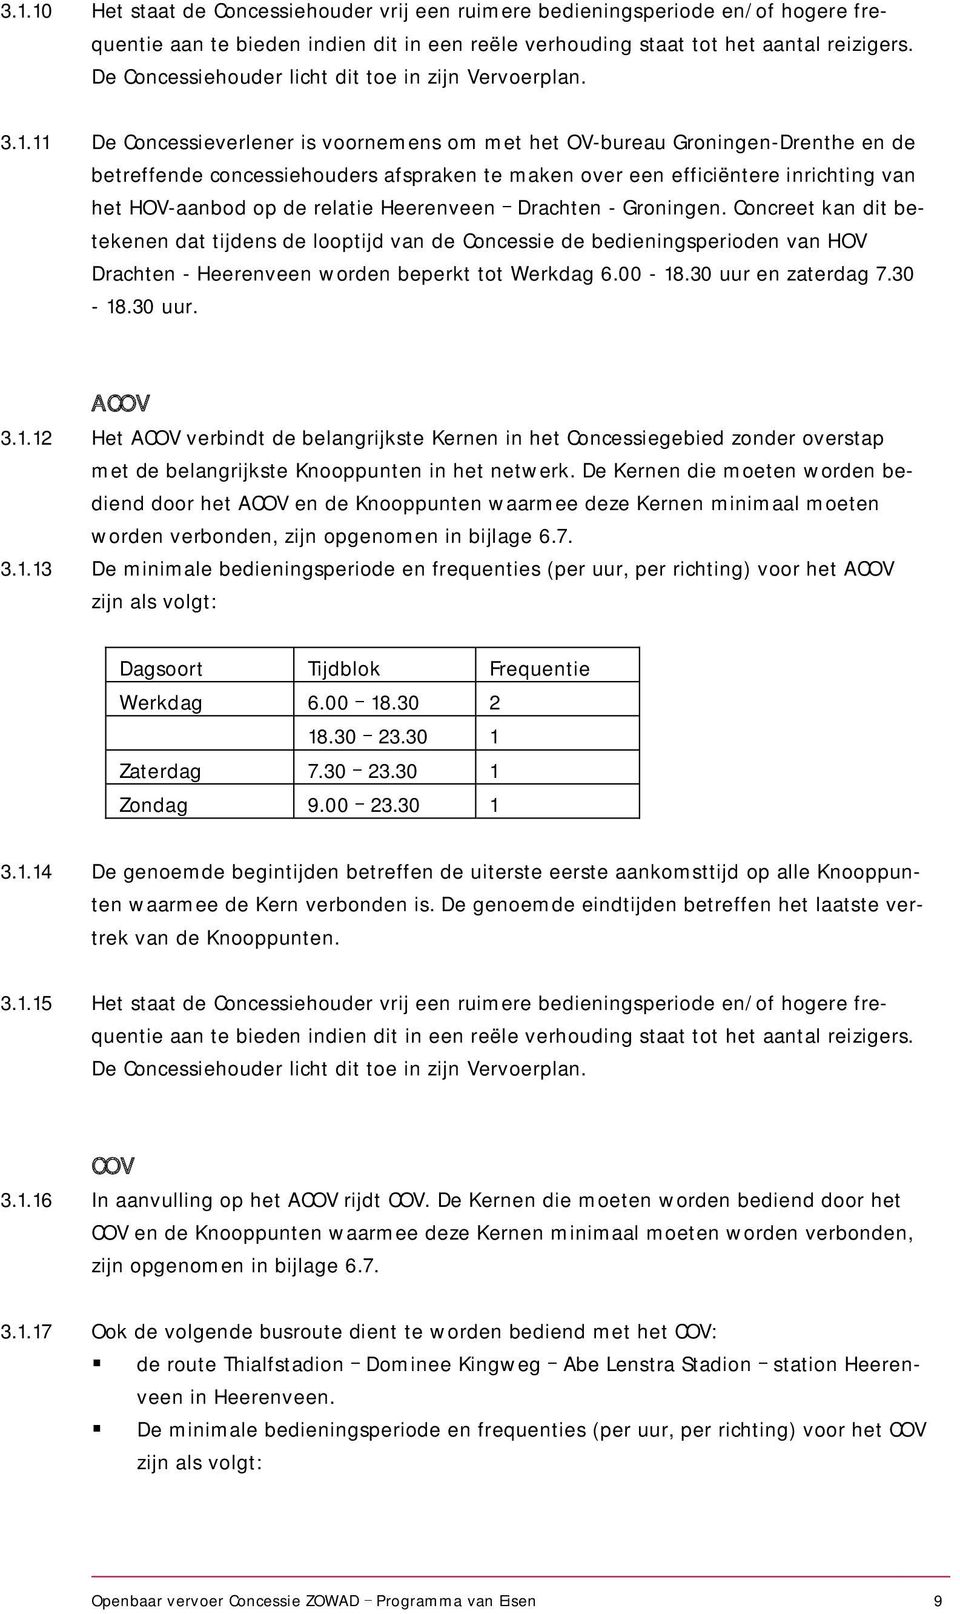 11 De Concessieverlener is voornemens om met het OV-bureau Groningen-Drenthe en de betreffende concessiehouders afspraken te maken over een efficiëntere inrichting van het HOV-aanbod op de relatie